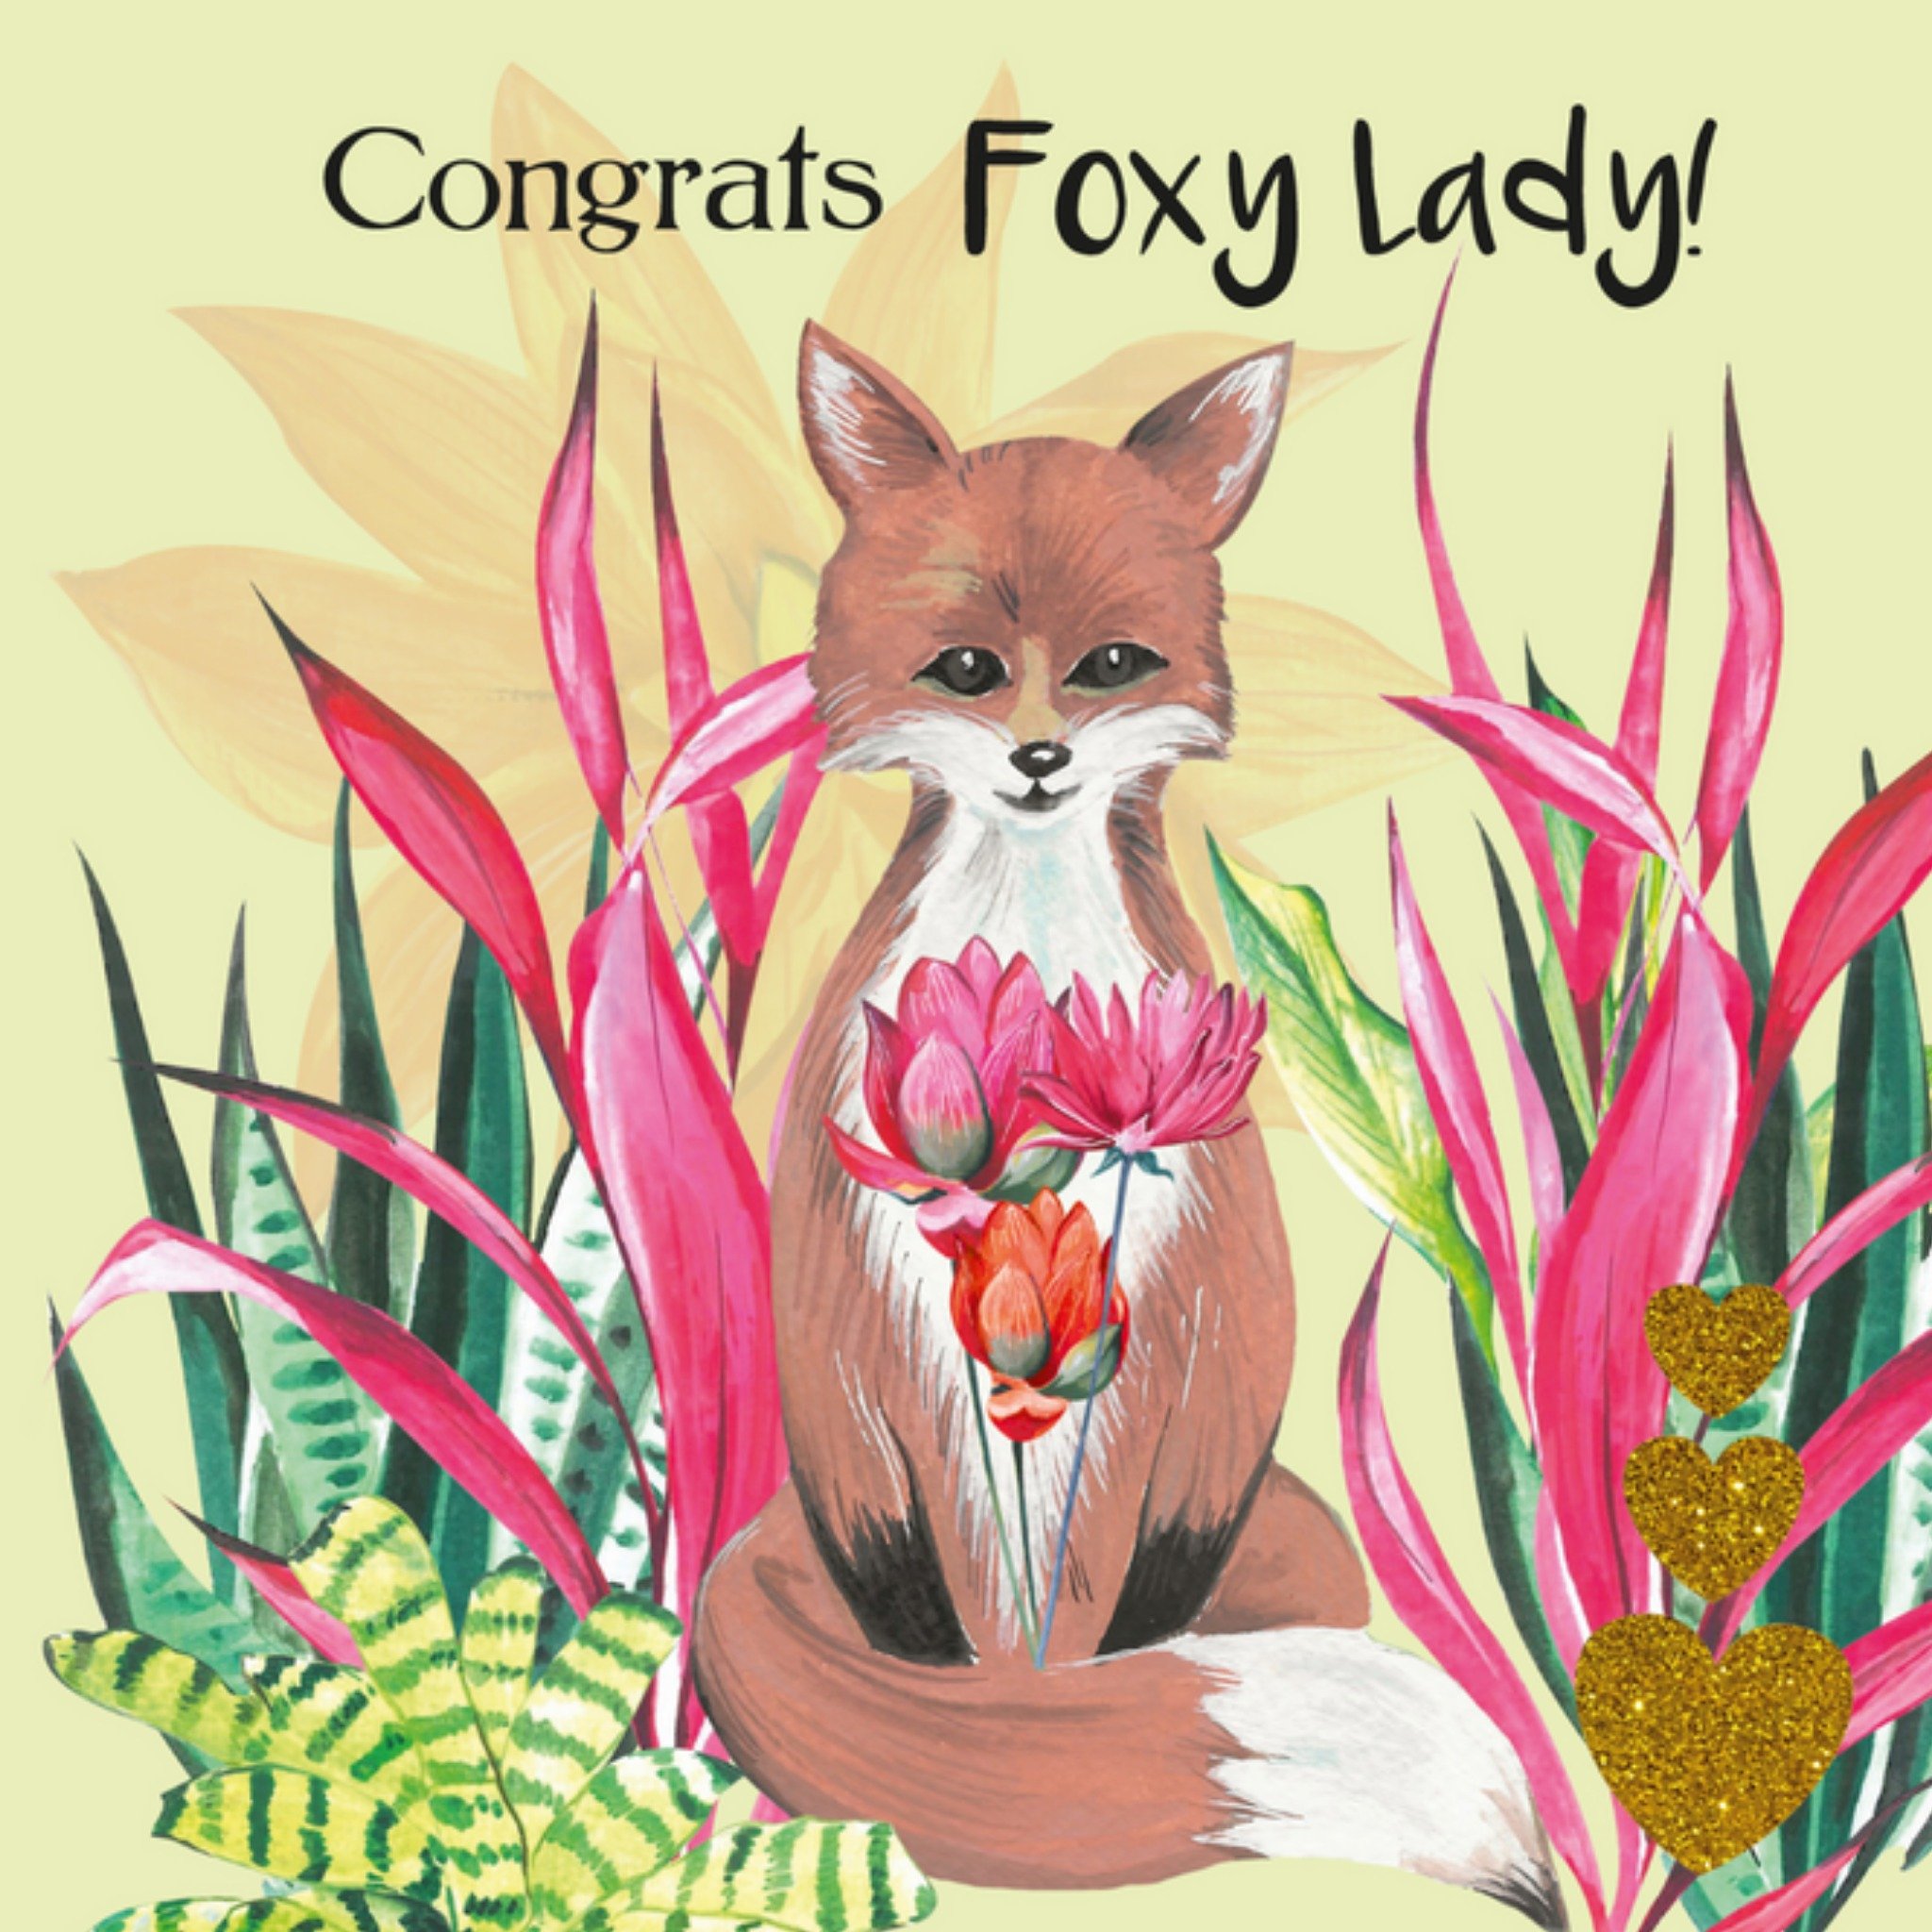 Paperclip - Verjaardagskaart - Foxy lady!